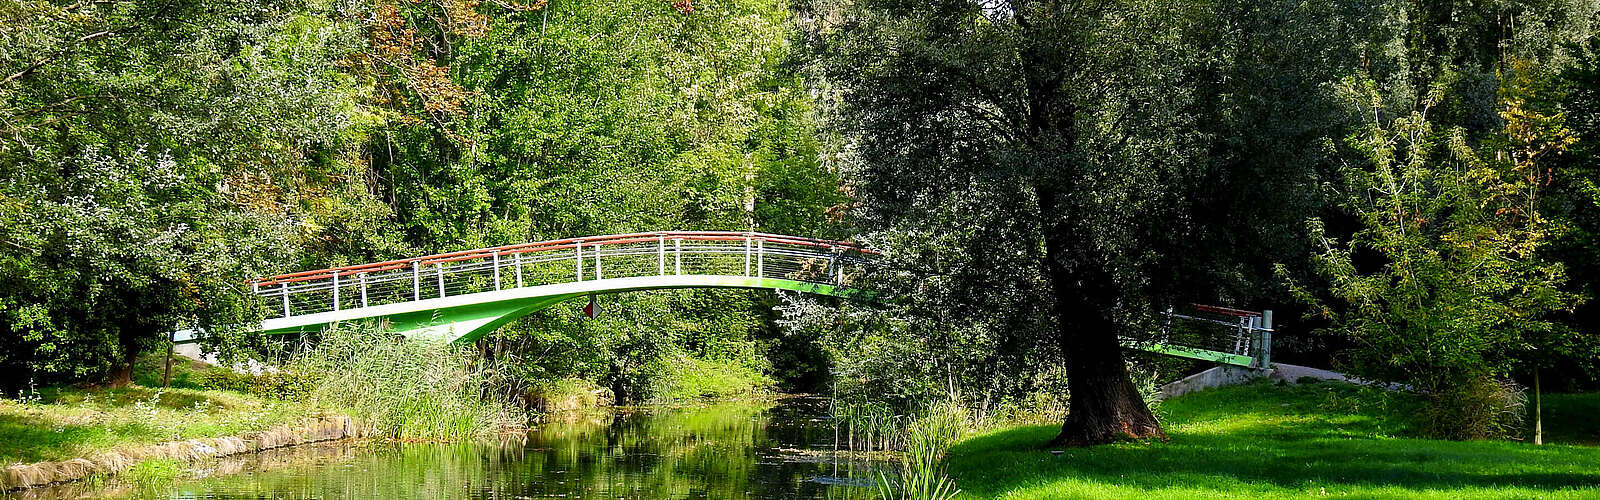 Brücke im Zossener Stadtpark,
        
    

        Foto: Stadt Zossen/Fred Hasselmann